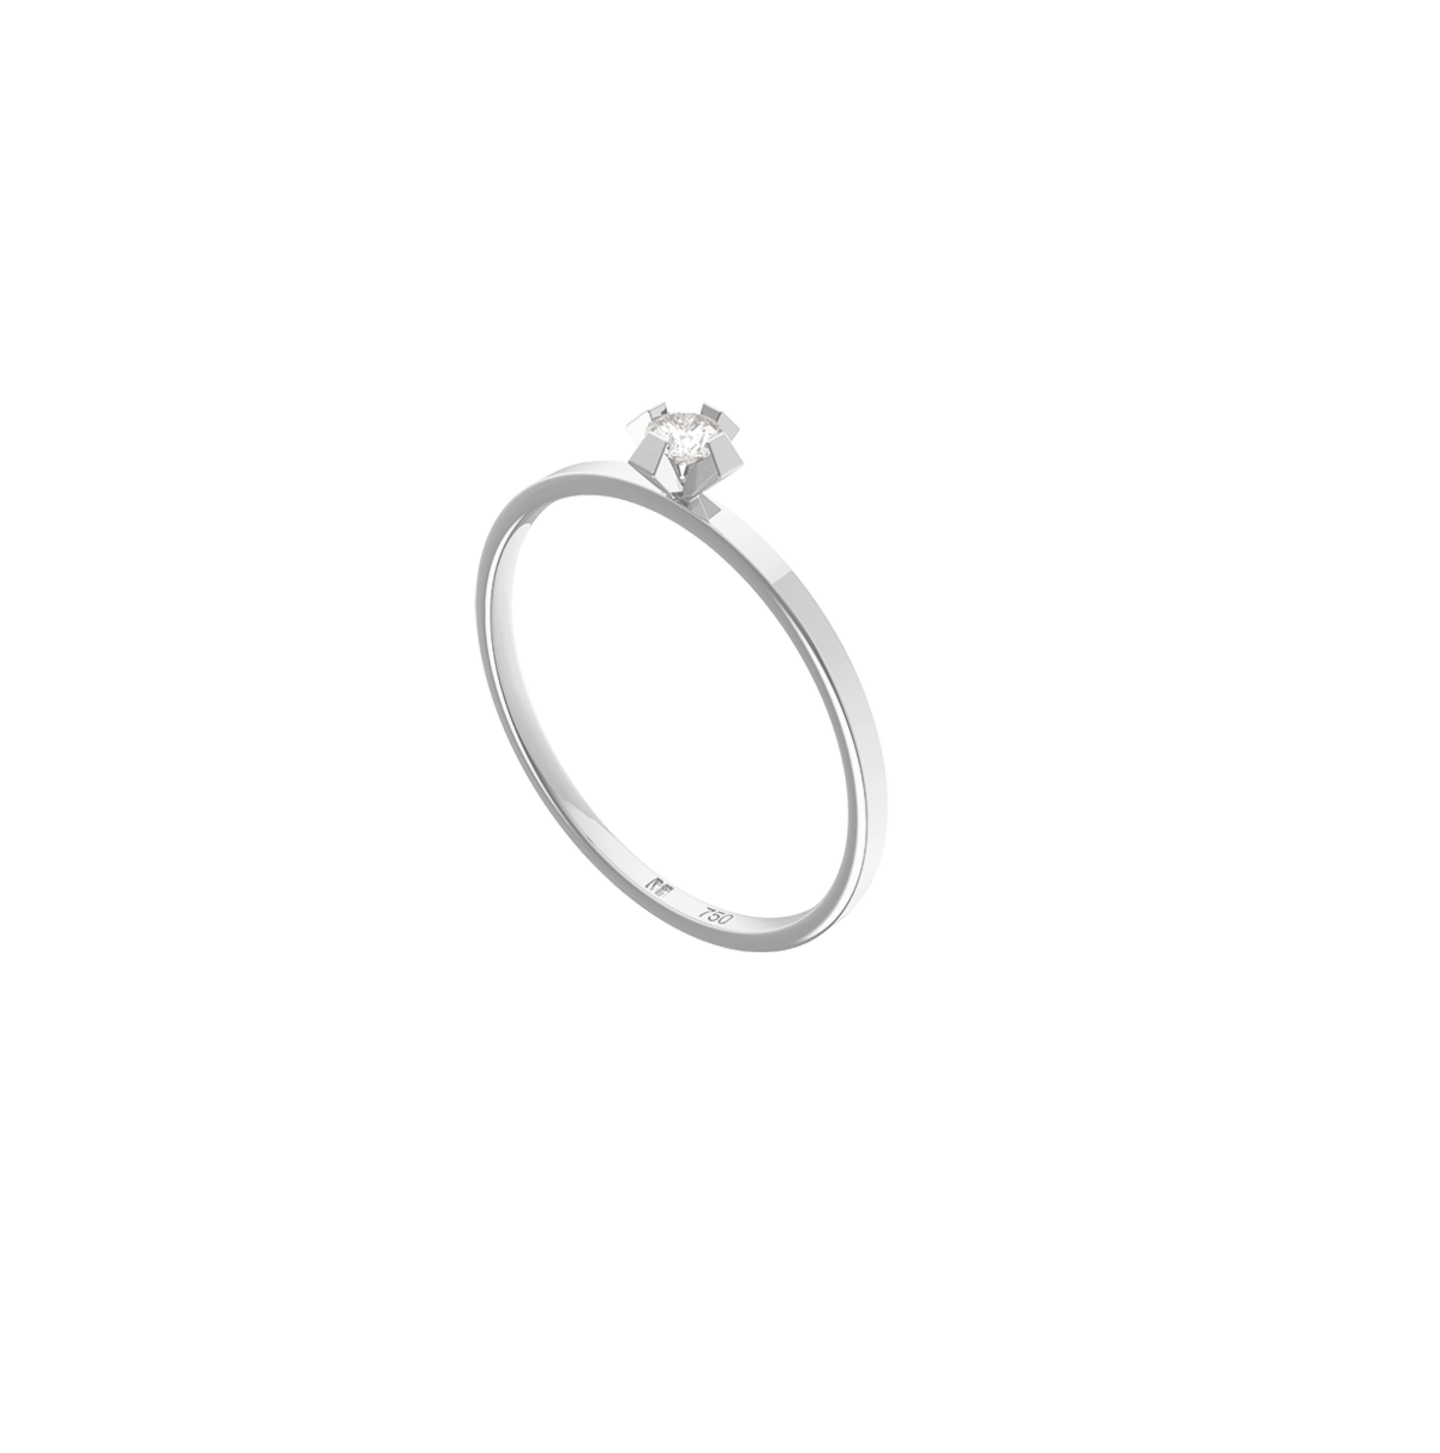 Zu diesem tollen Ring von Maren Jewellery sagen wir nicht nur "Ja", wir schreien es. Der mini Solitaire Ring aus Weißgold aus der ReMind Kollektion ist schlichte Perfektion mit genau der nötigen Portion Stil. Für rund 545 Euro bei Maren Jewellery erhältlich.